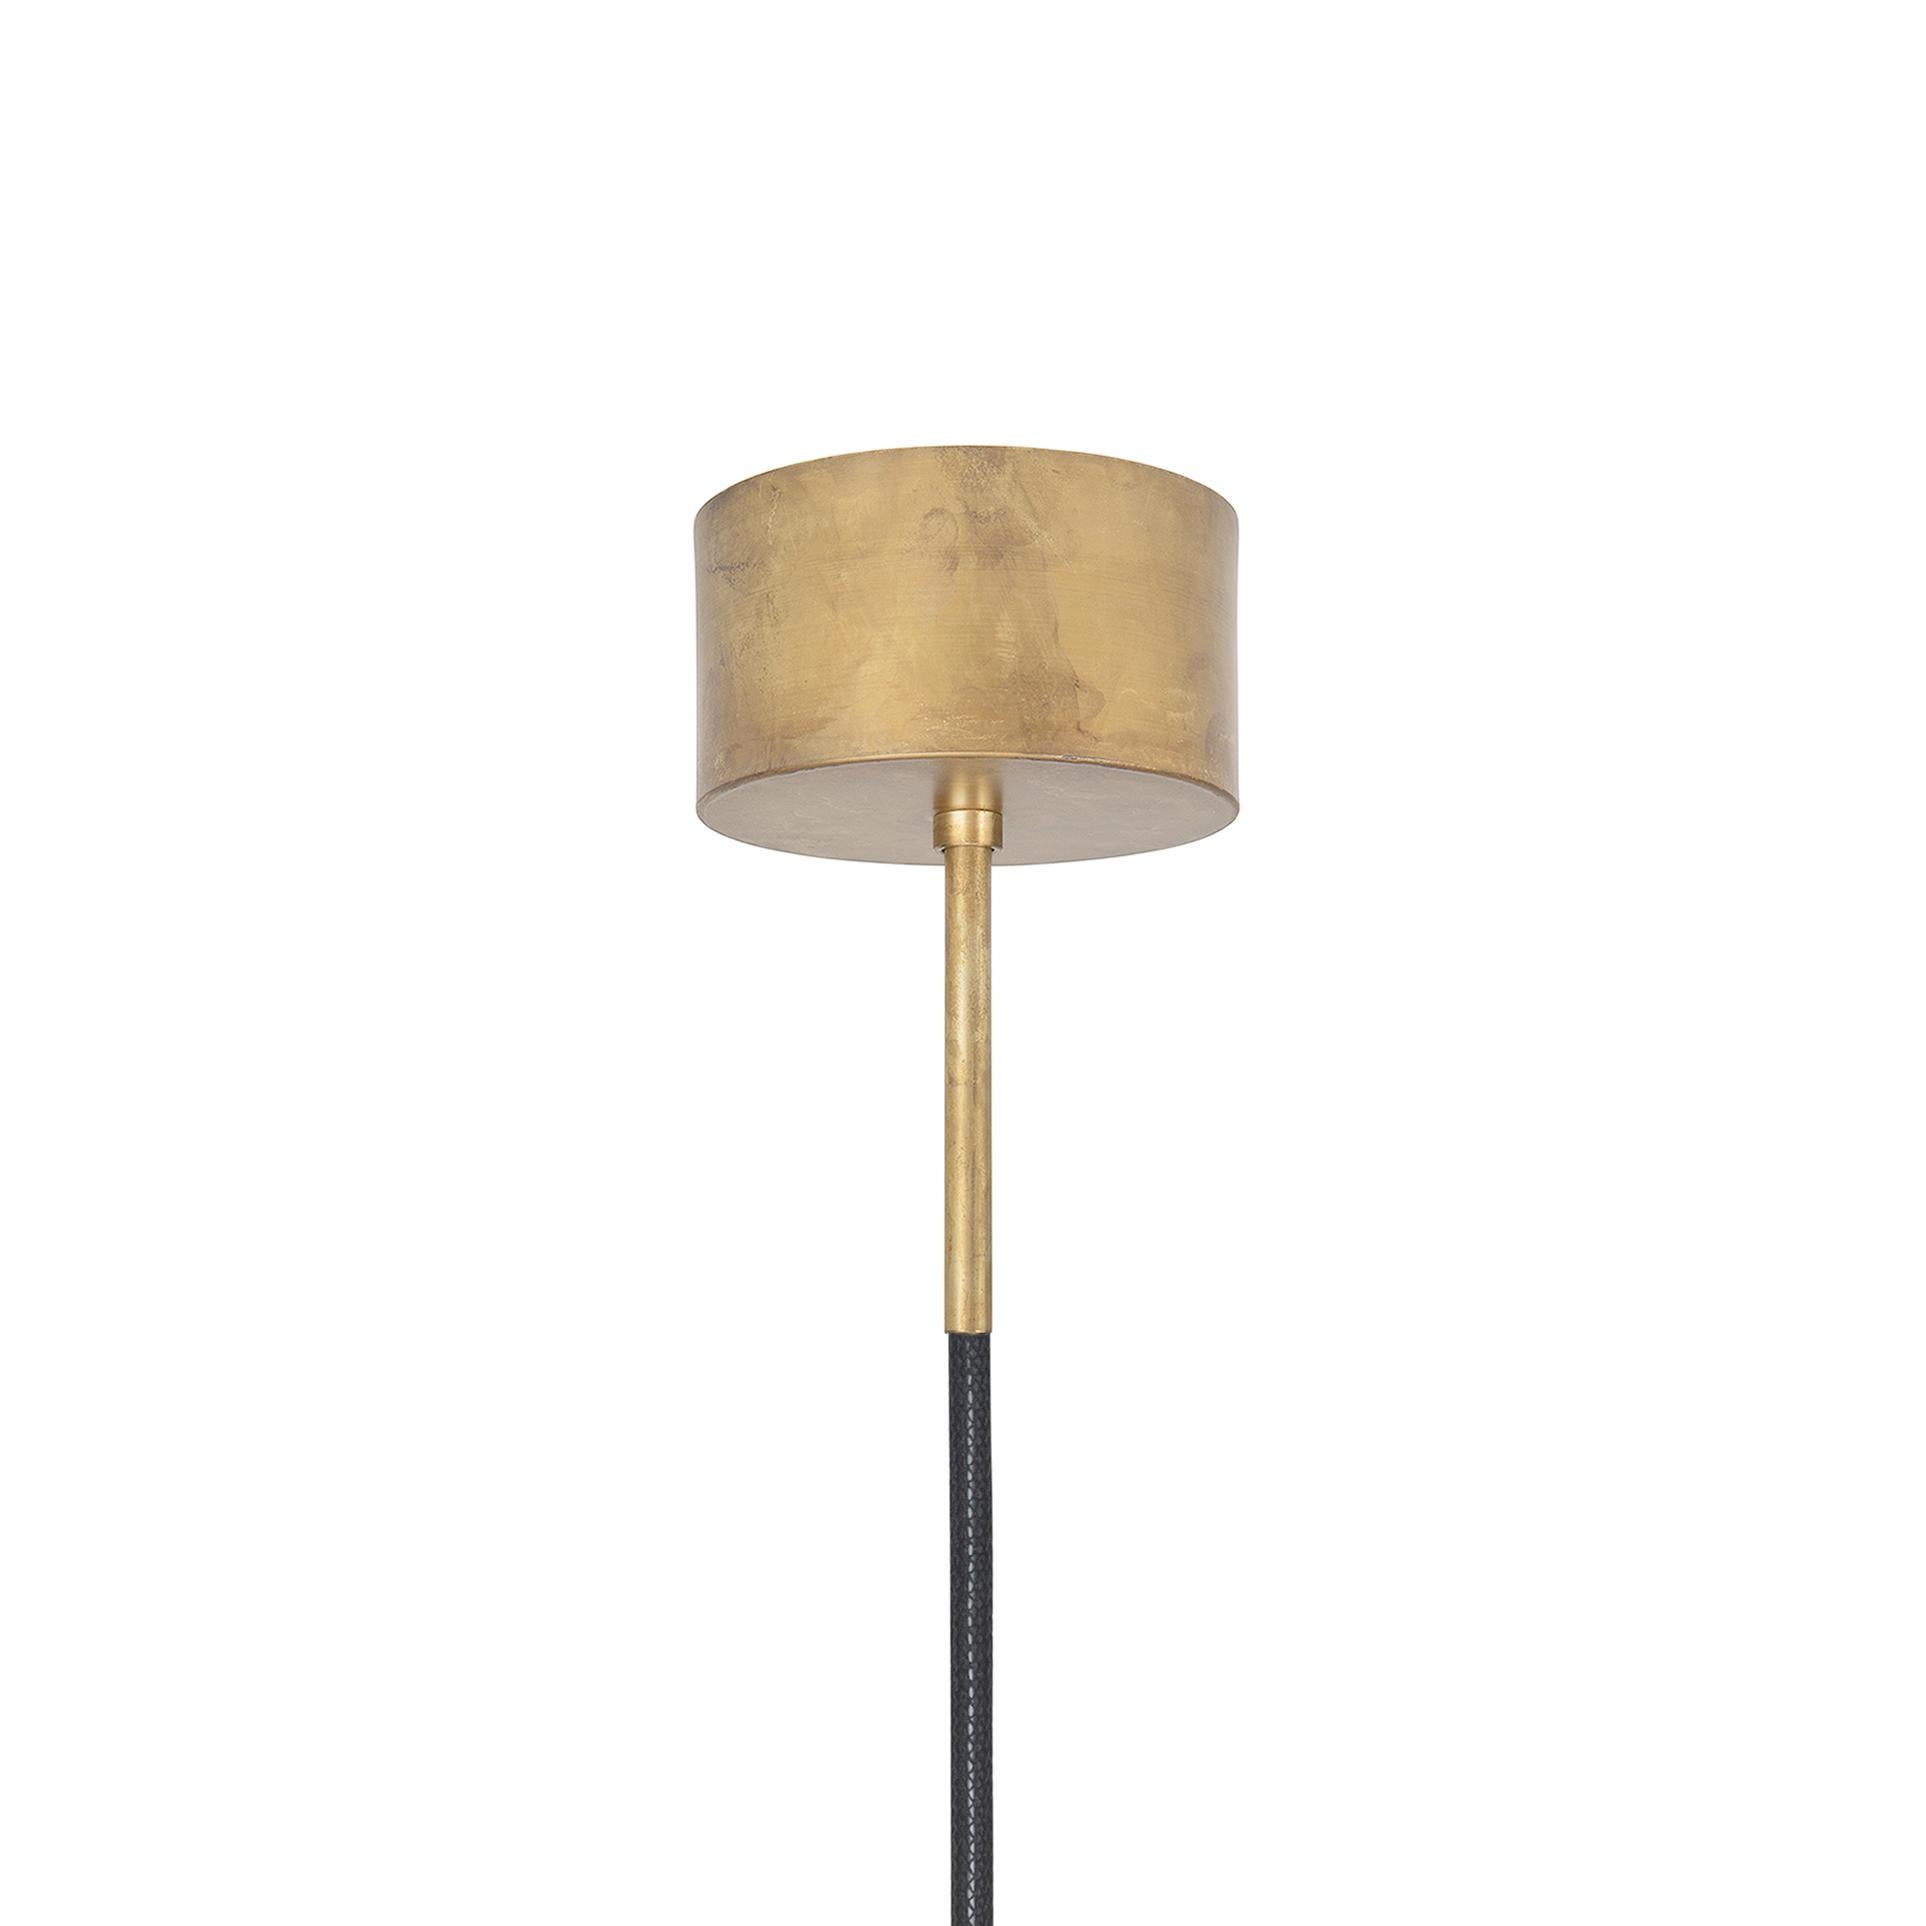 Scandinavian Modern Johan Carpner Klyfta Small Raw Brass Ceiling Lamp by Konsthantverk For Sale